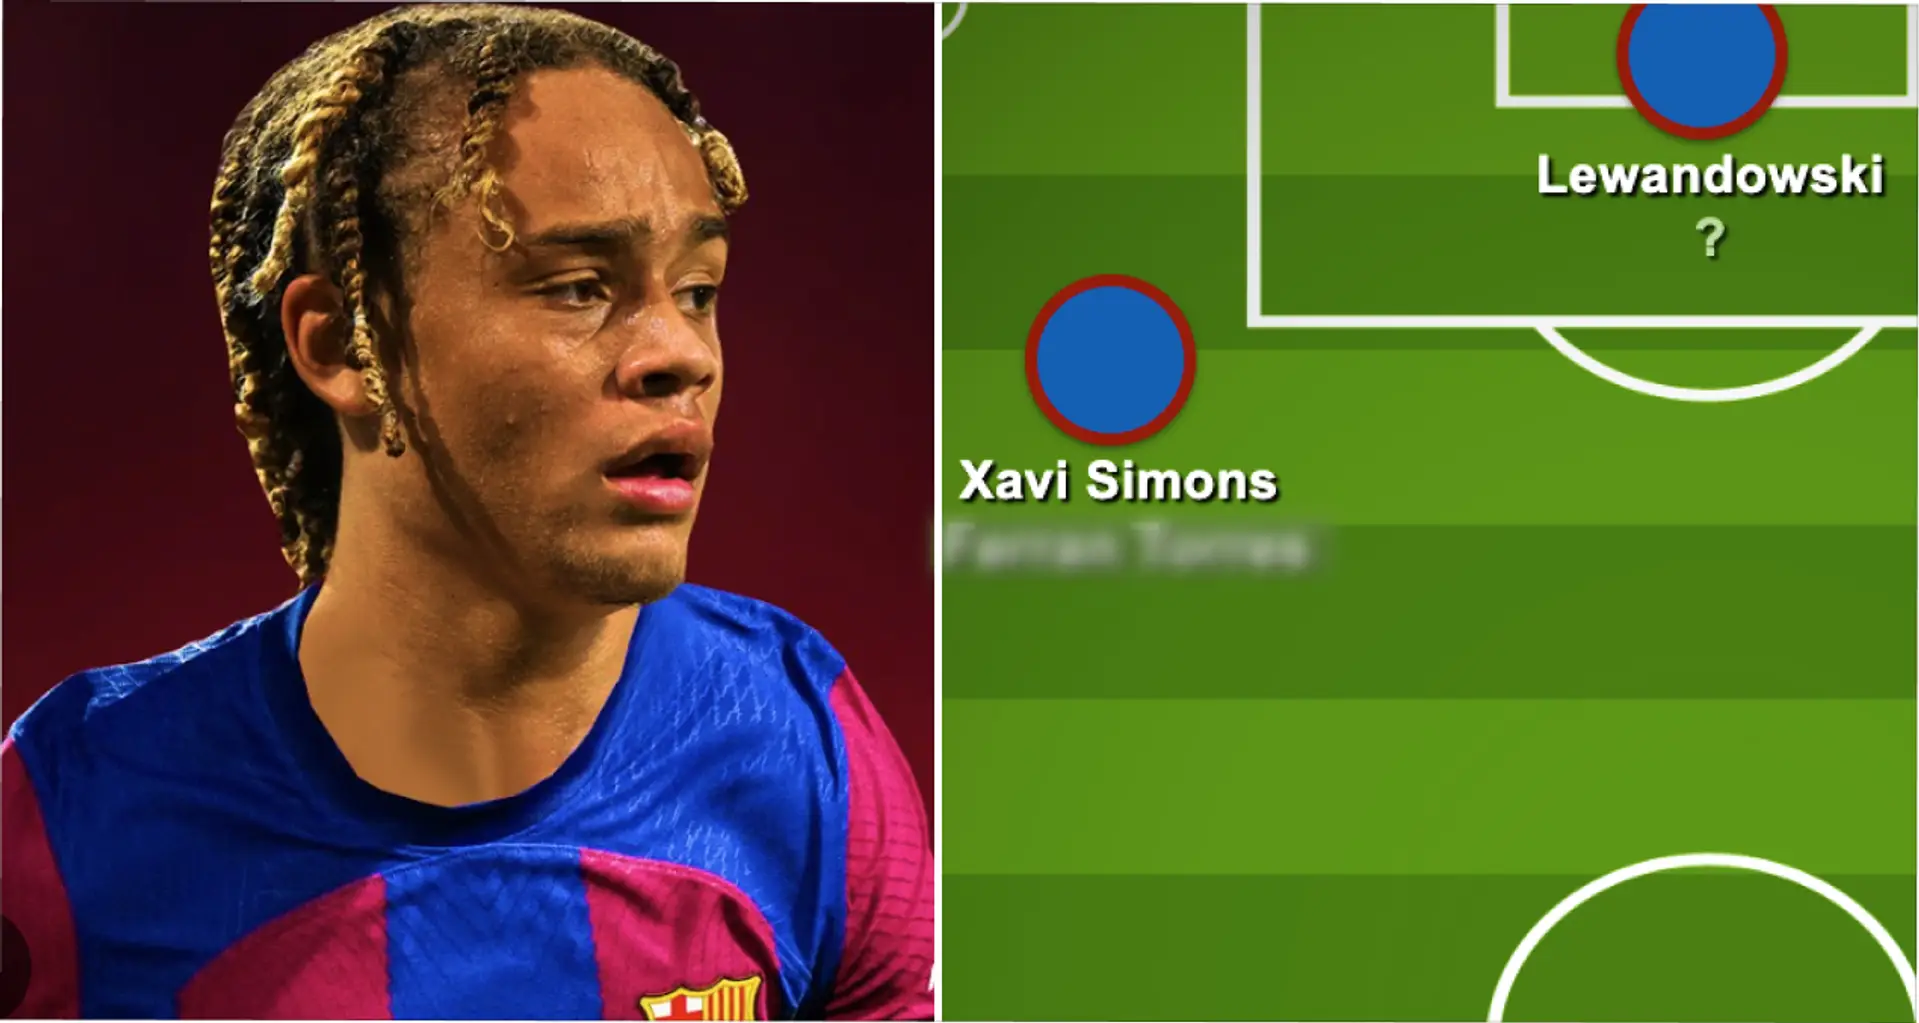 Barca's realistic squad depth in attack next season shown – Xavi Simons IN